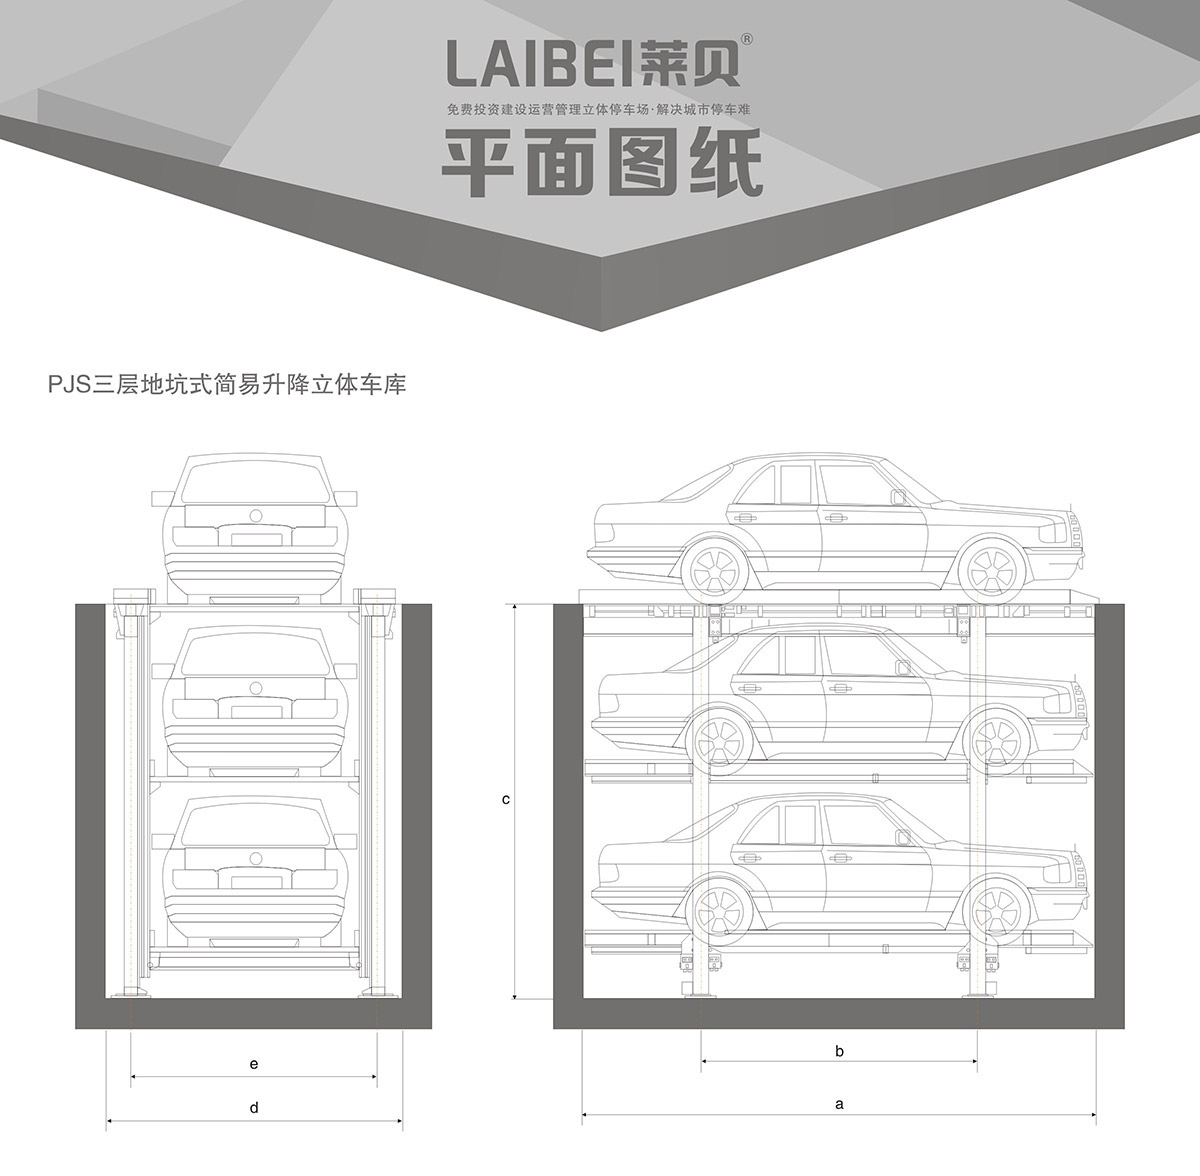 四川PJS3-D2三层地坑简易升降机械车库平面图纸.jpg